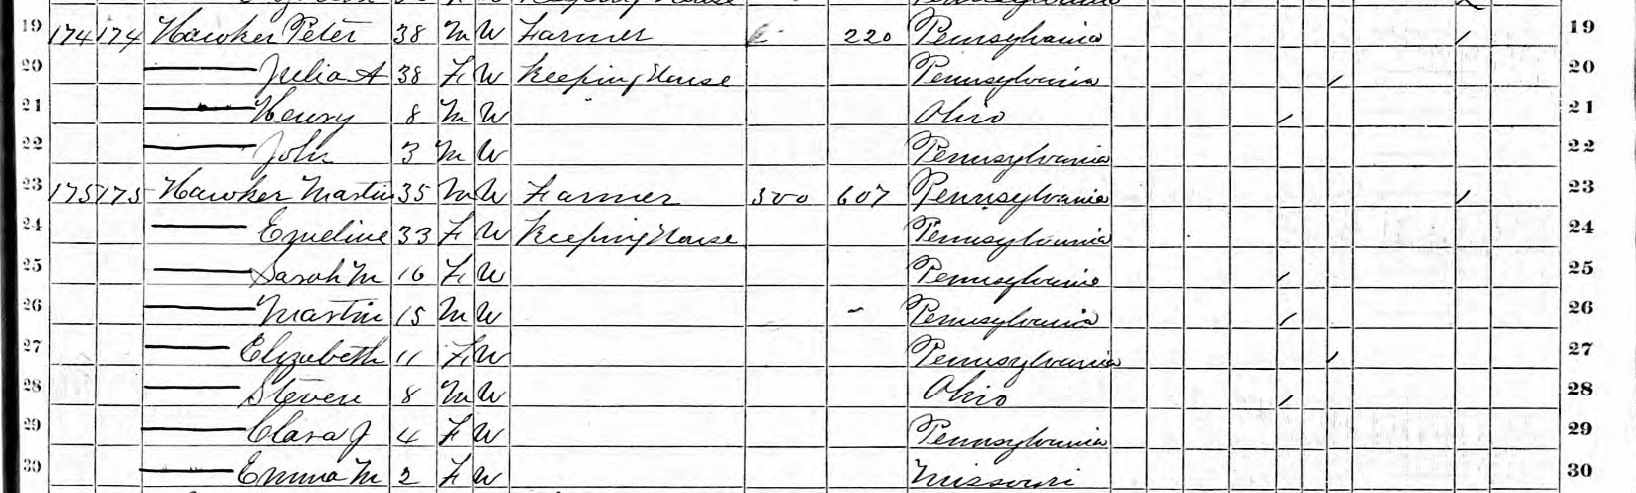 1870 Peter & Martin Hocker census record